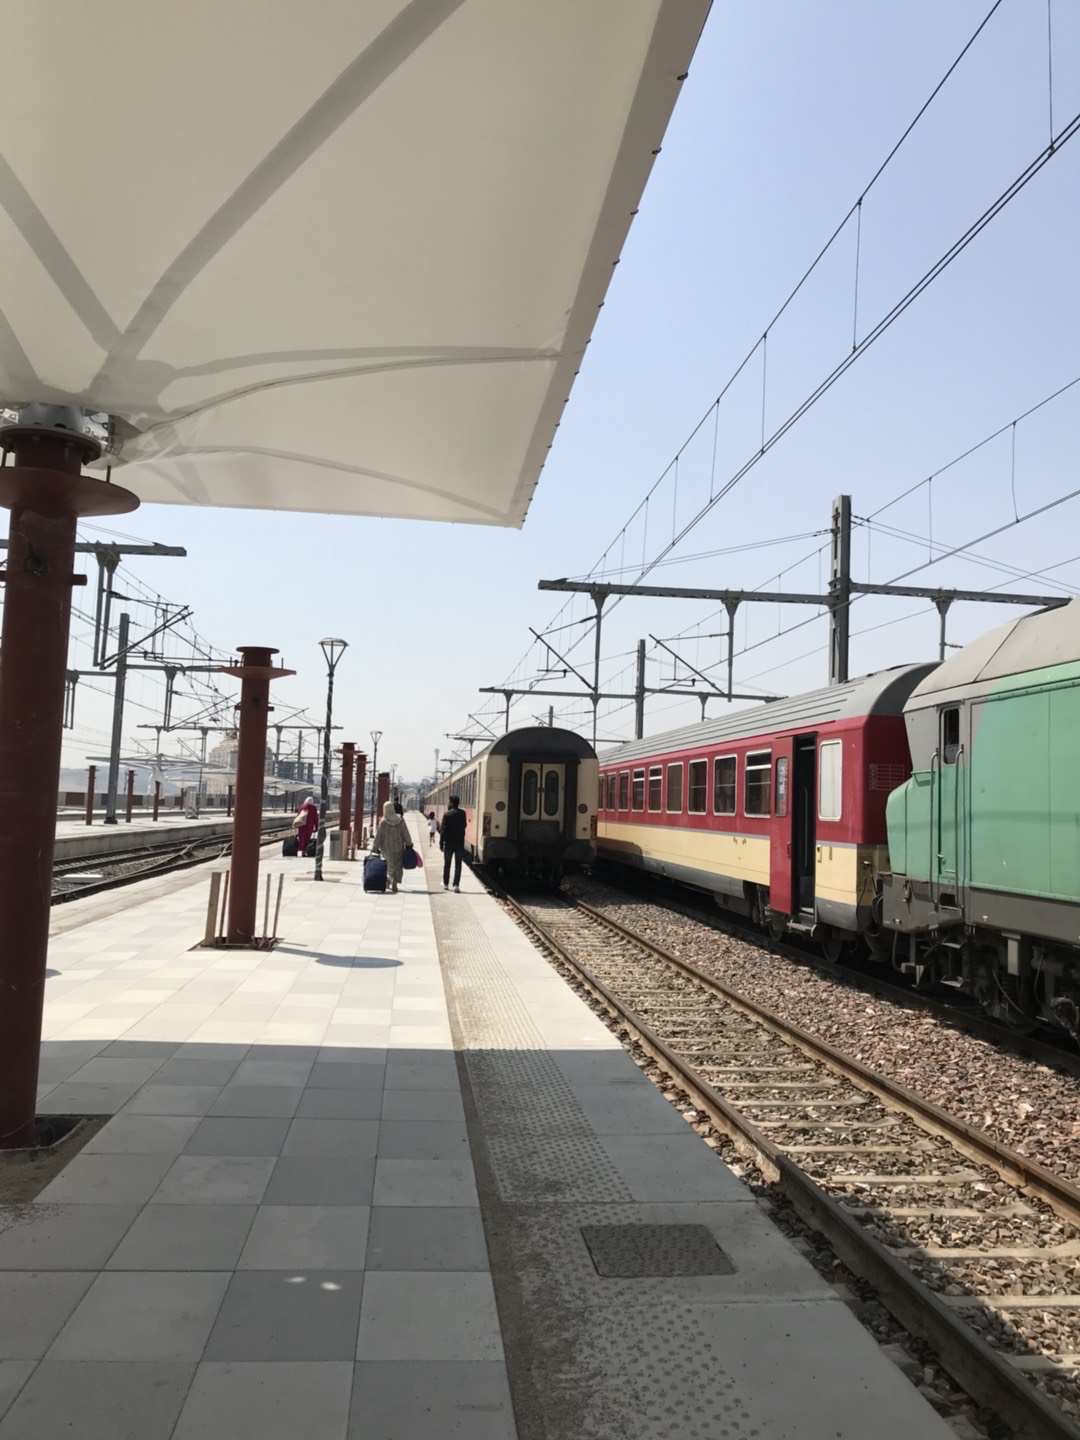 来体验一下摩洛哥的火车🚞丹吉尔—卡萨布兰卡